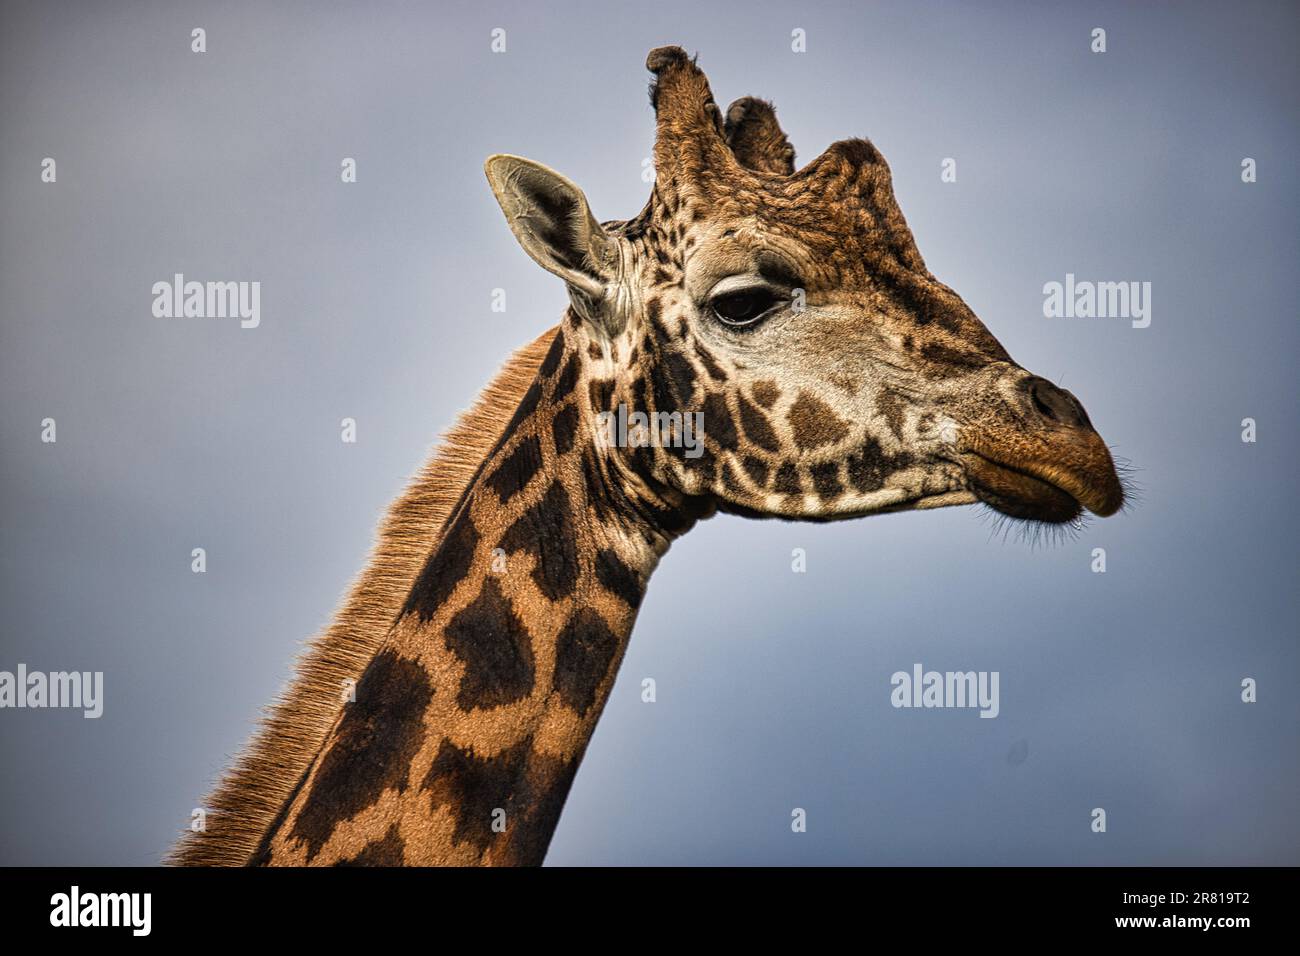 Primo piano profilo laterale di una giraffa, la bocca leggermente aperta mentre mastica Foto Stock